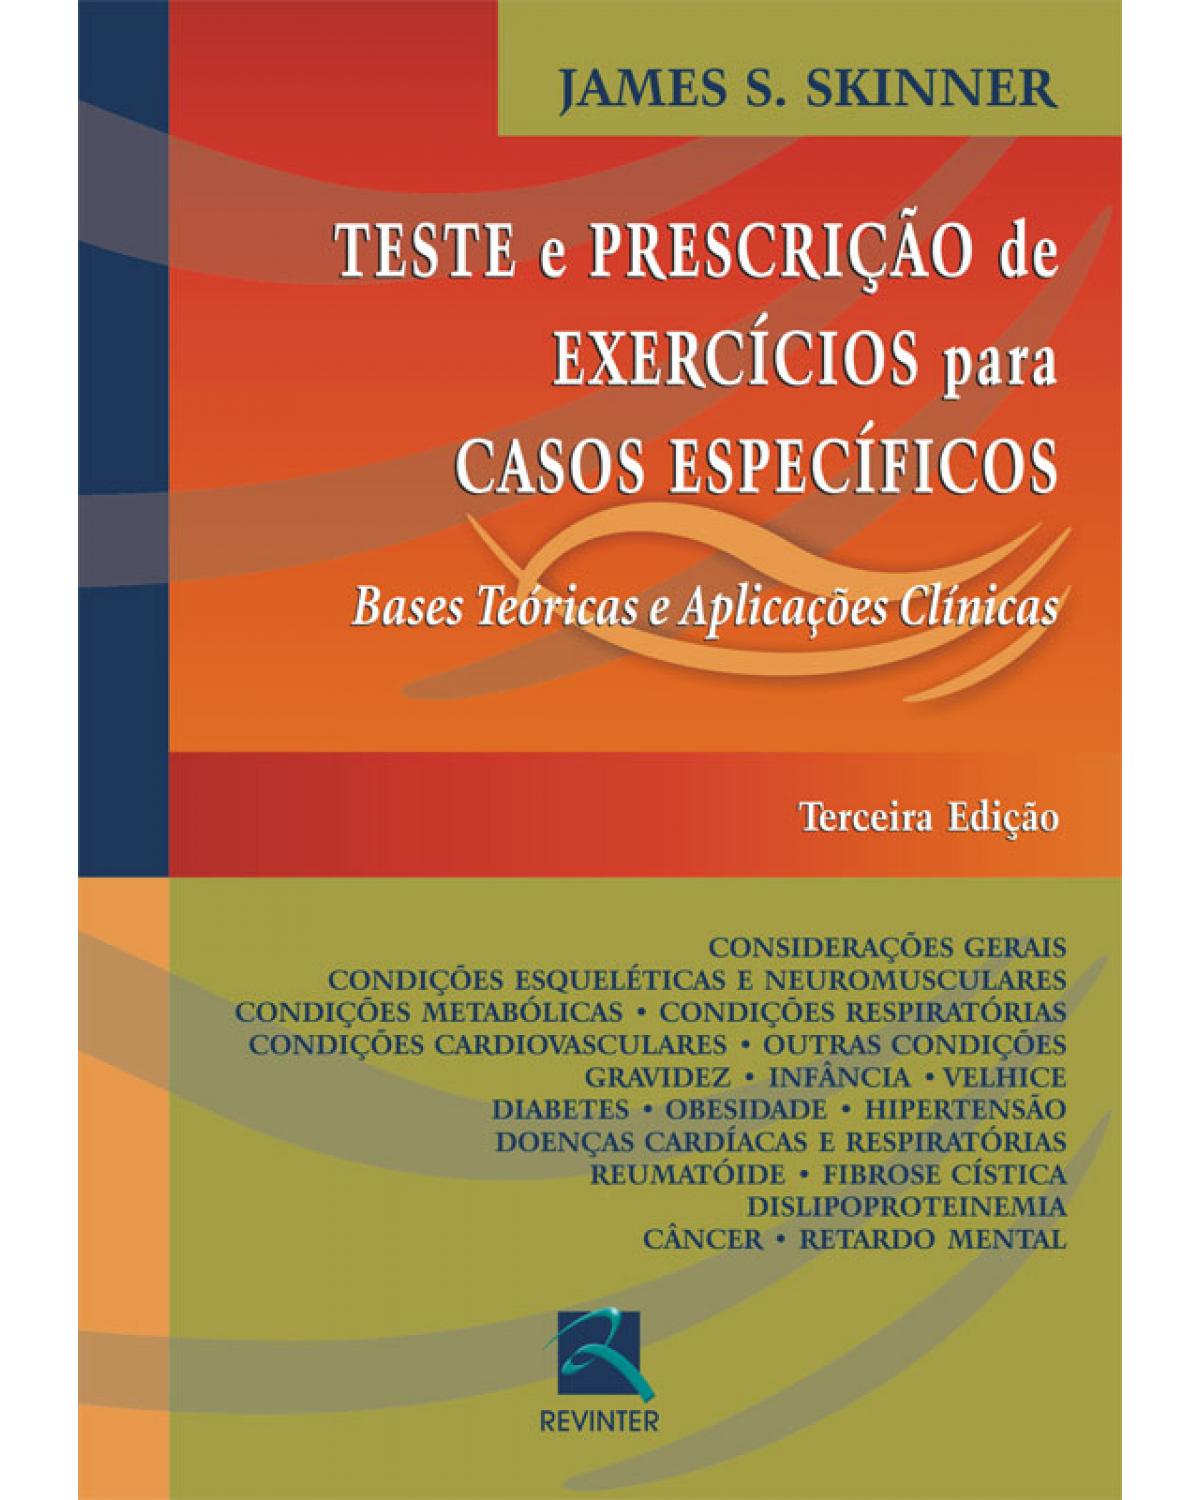 Teste e prescrição de exercícios para casos específicos - bases teóricas e aplicações clínicas - 3ª Edição | 2007